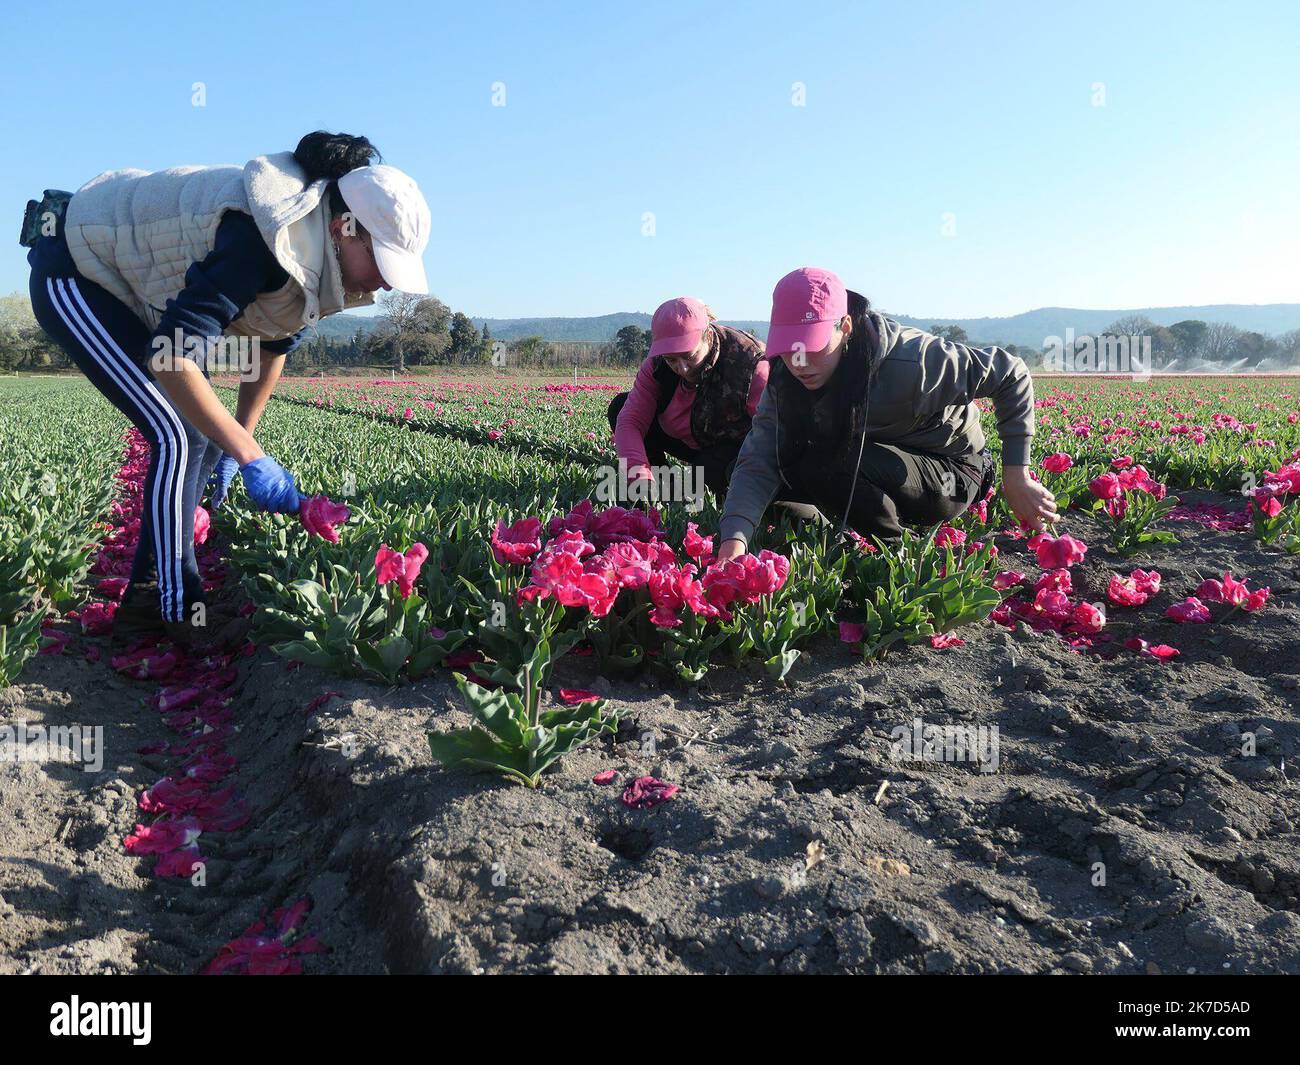 ©Joelle Vassort/MAXPPP, Uchaux (10 km d'Orange; Vaucluse) le 30/03/21. Champs de tulipes kultivierte par la societe neerlandaise Triflor. La societe cultive une vingtaine d'Hektar de bulbes dans le nord Vaucluse. Apres l'etetage mecanique des tulipes, des ouvrieres retirent les derniers petale pour ne garder que les bulbes - Uchaux, Südfrankreich Tulpenfelder, die von der niederländischen Firma Triflor angebaut werden. Das Unternehmen baut rund zwanzig Hektar Blumenzwiebeln im nördlichen Vaucluse an. Stockfoto